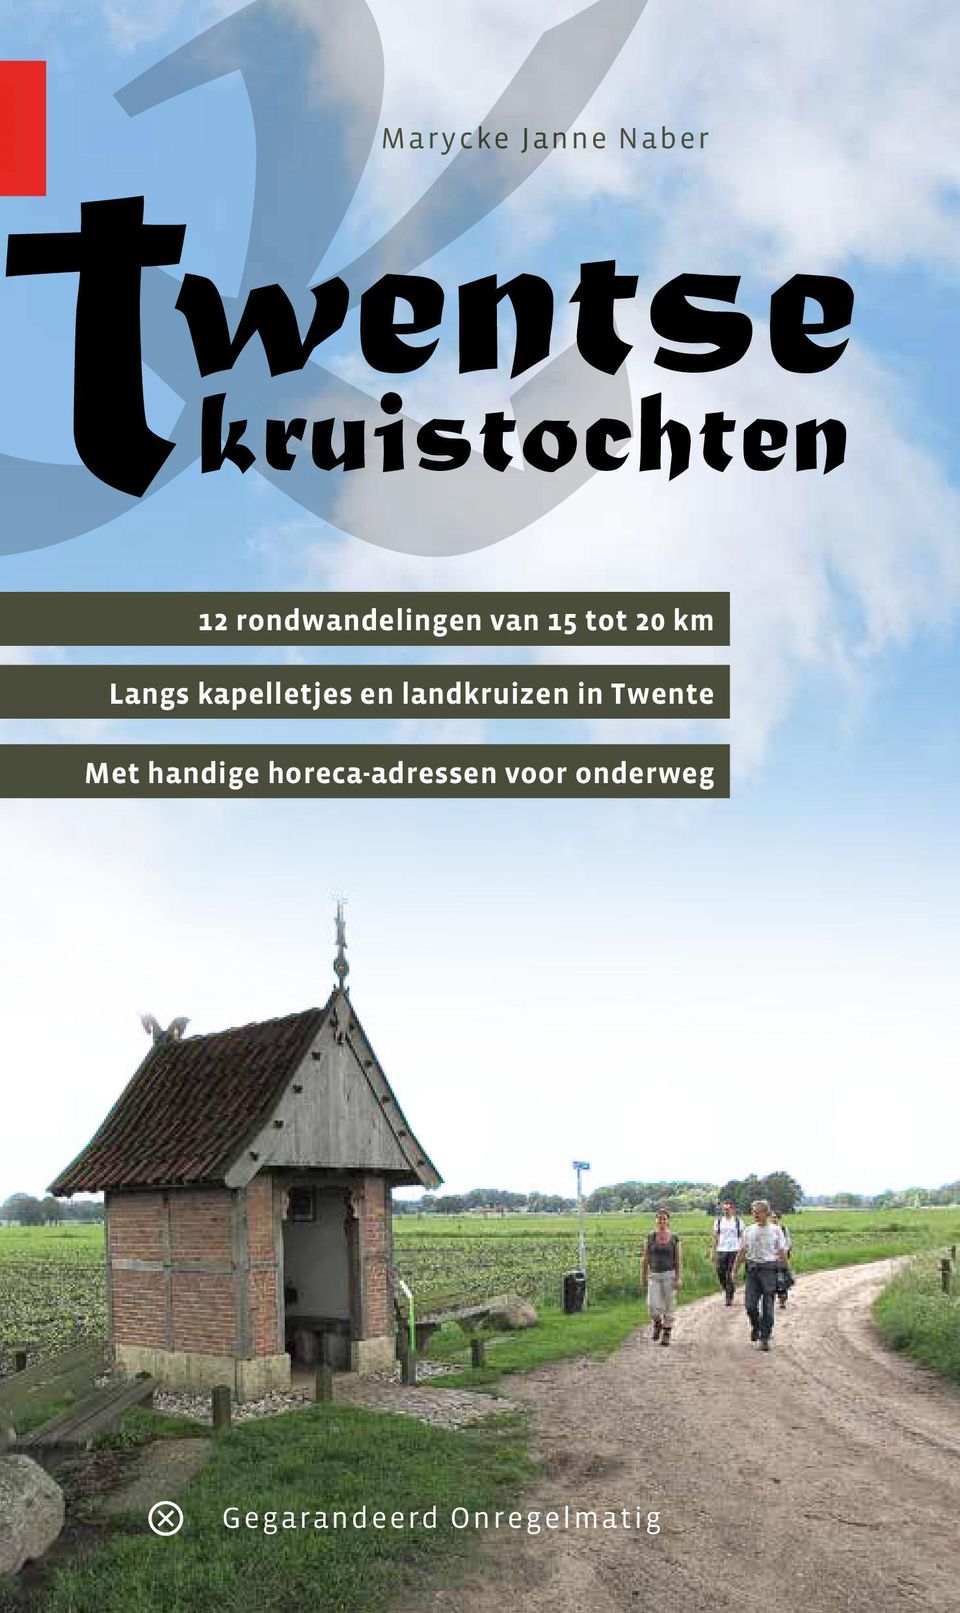 kapelletjes en landkruizen in Twente Met